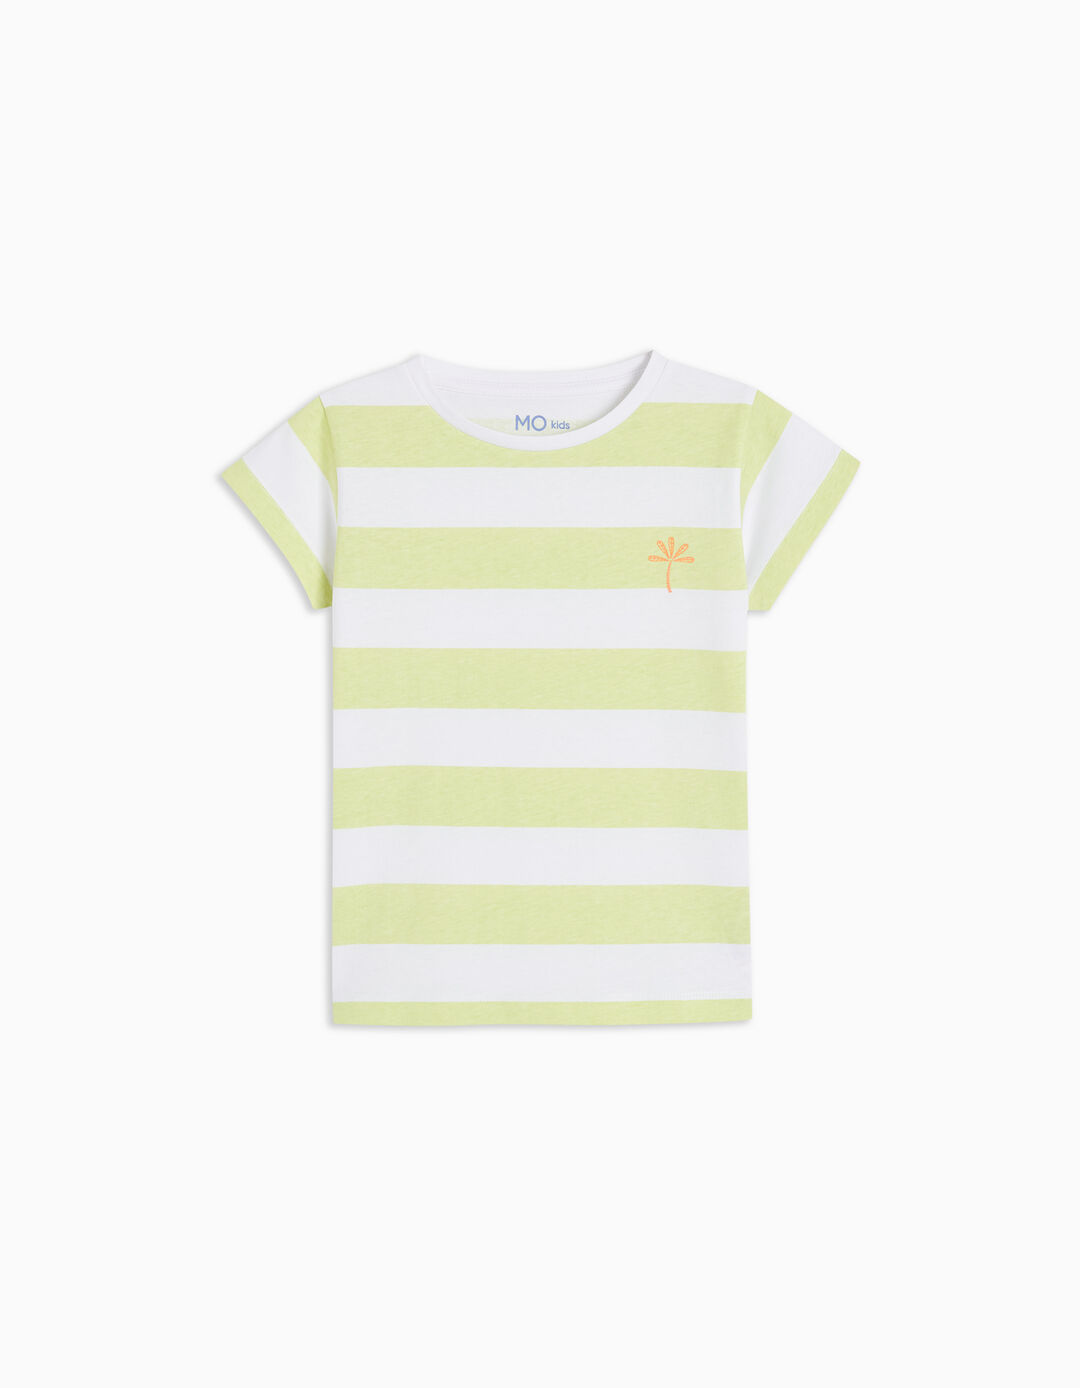 Striped T-shirt, Girls, Light Green